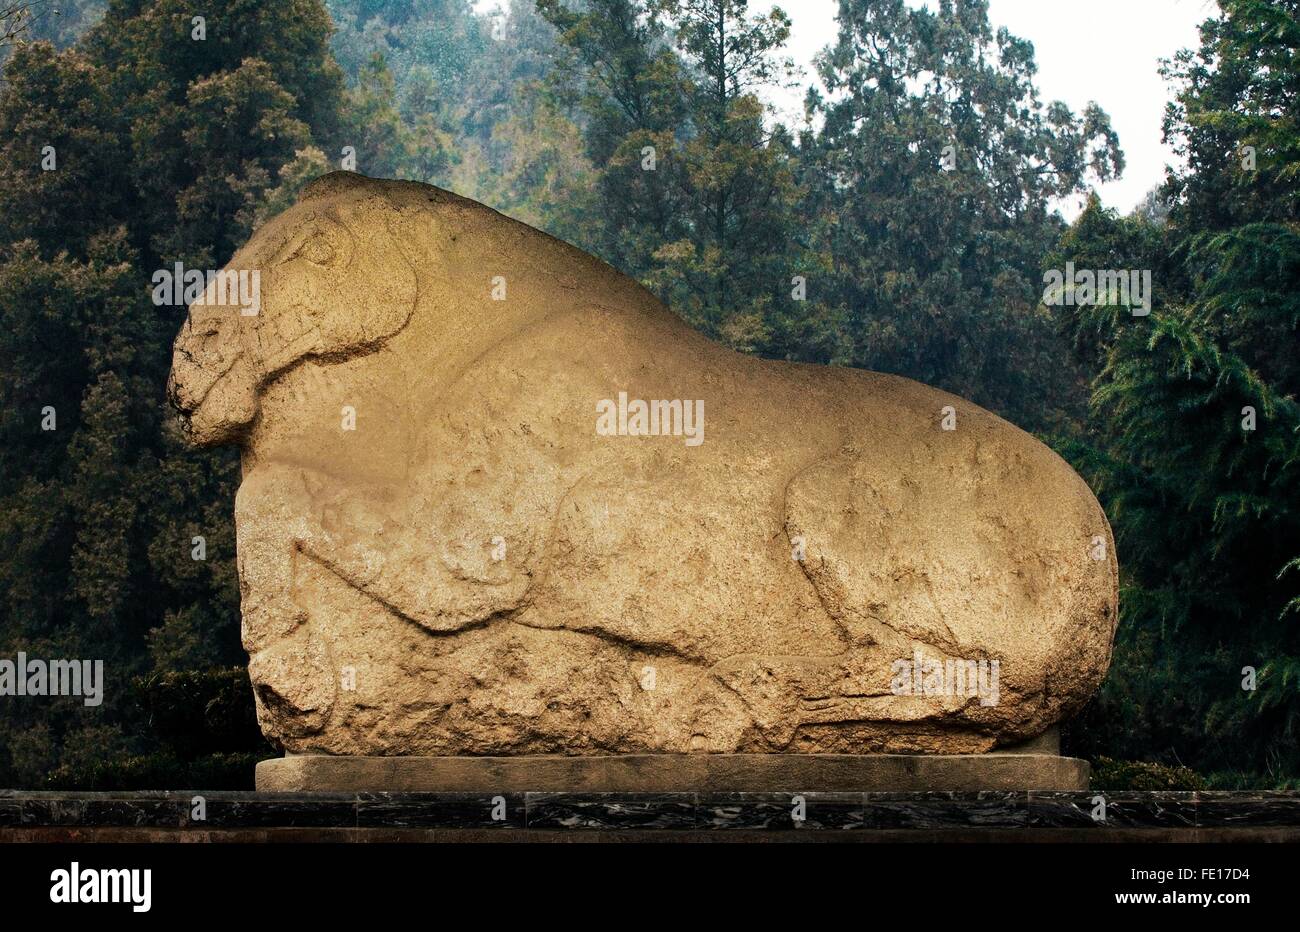 Mausolée Maoling près de Xi'an, province du Shaanxi, en Chine. Ancienne sculpture de cheval au galop date de la dynastie des Han de l'Ouest Banque D'Images